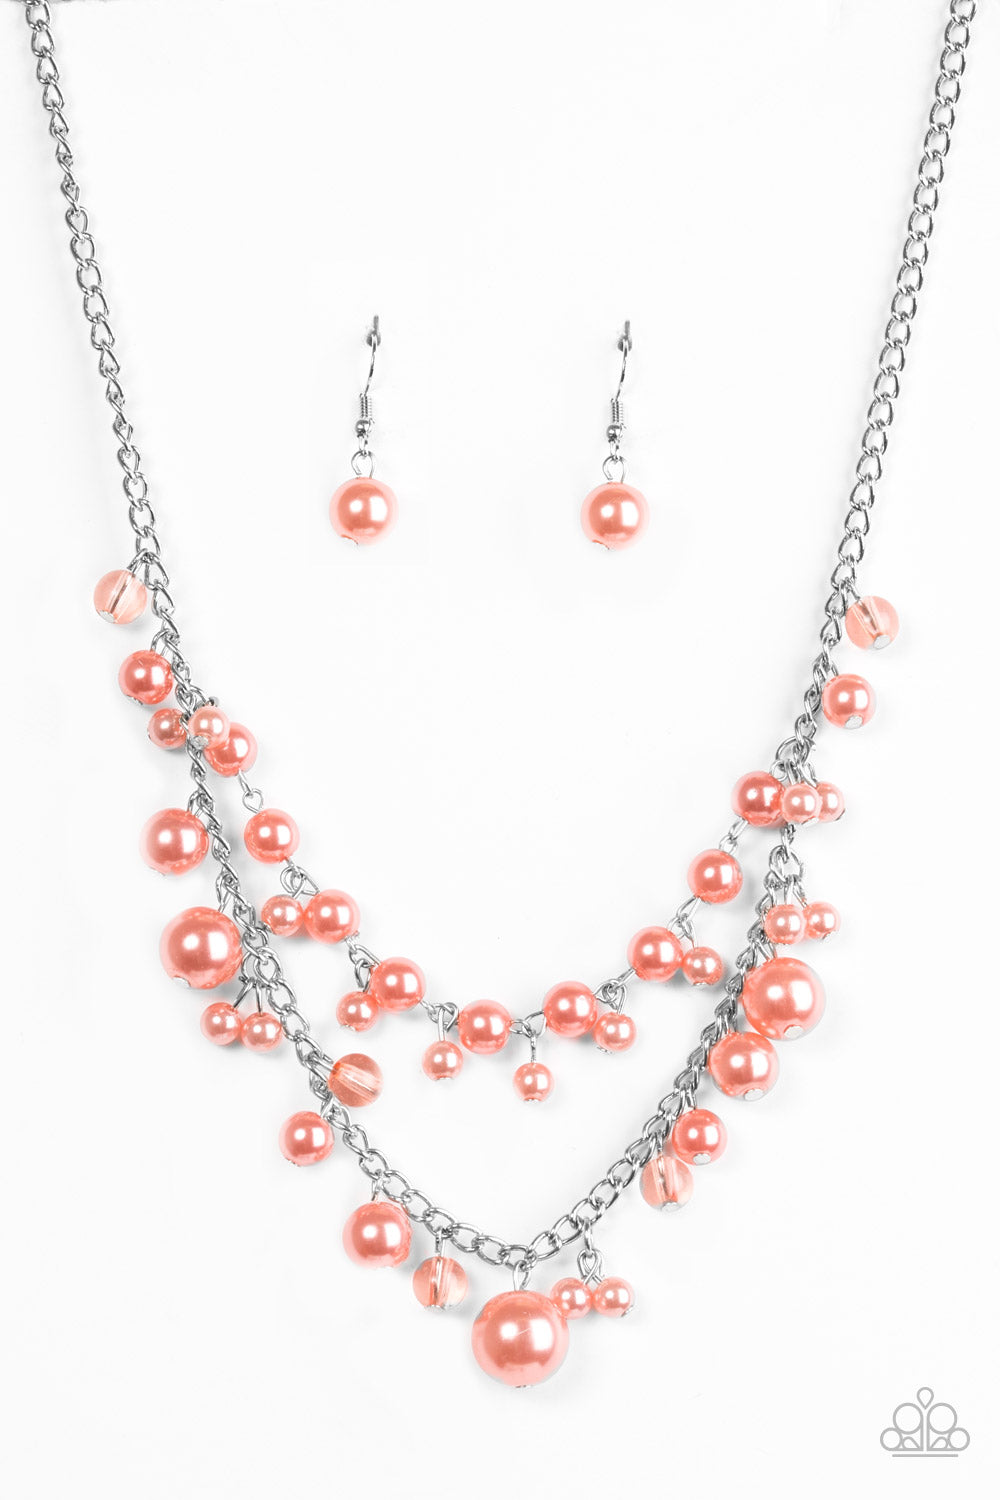 Paparazzi Necklaces - Blissfully Bridesmaid - Orange